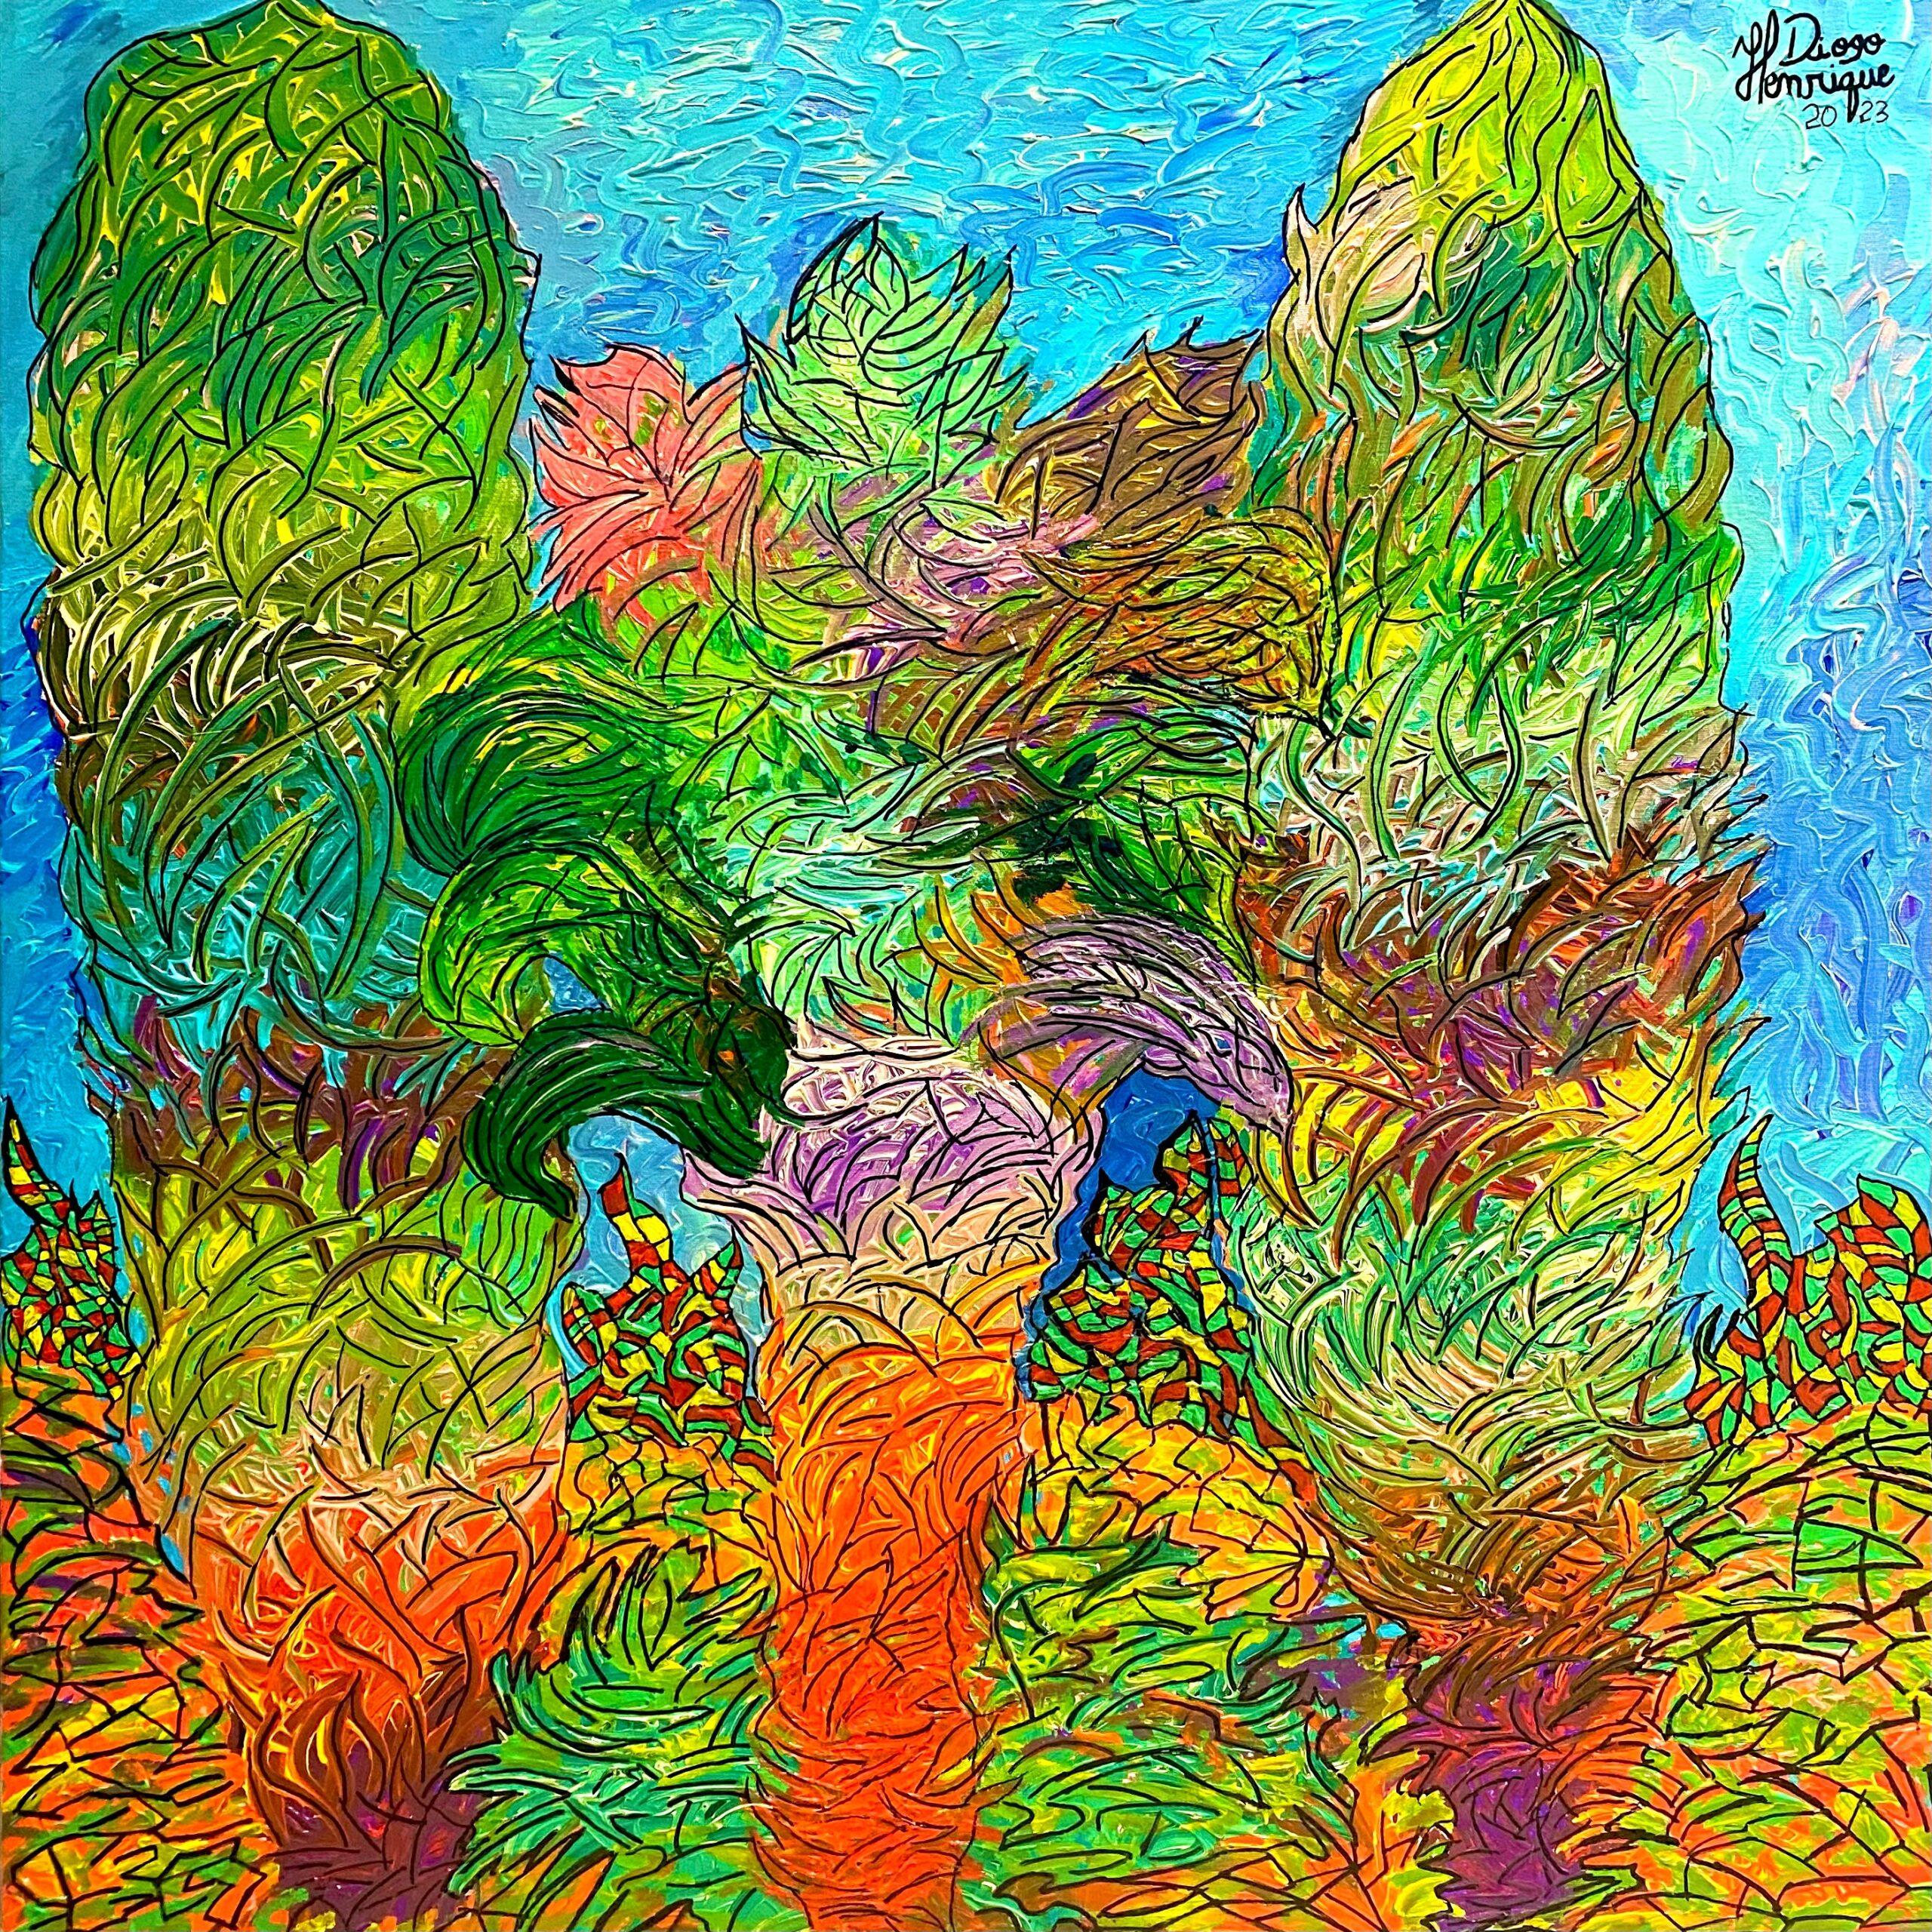 Kiefernbäume, die nicht aufhören wachsen, von Henrique Diogo – Painting von Unknown